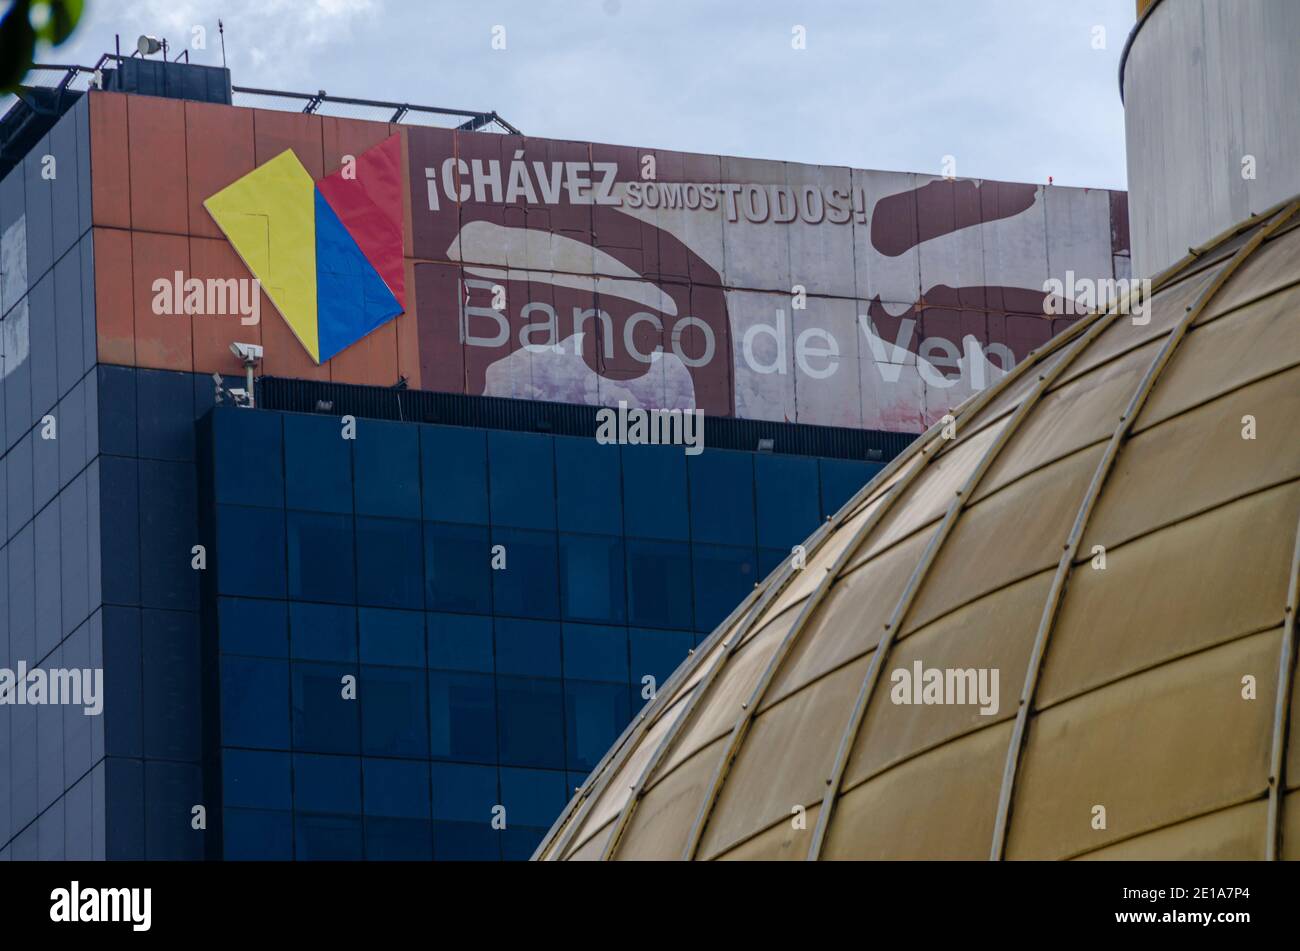 Avec un slogan qui dit... Chavez nous sommes tous, vous pouvez voir le palais législatif fédéral du Venezuela. Le Palacio Federal Legislativo ou aussi appelé C Banque D'Images